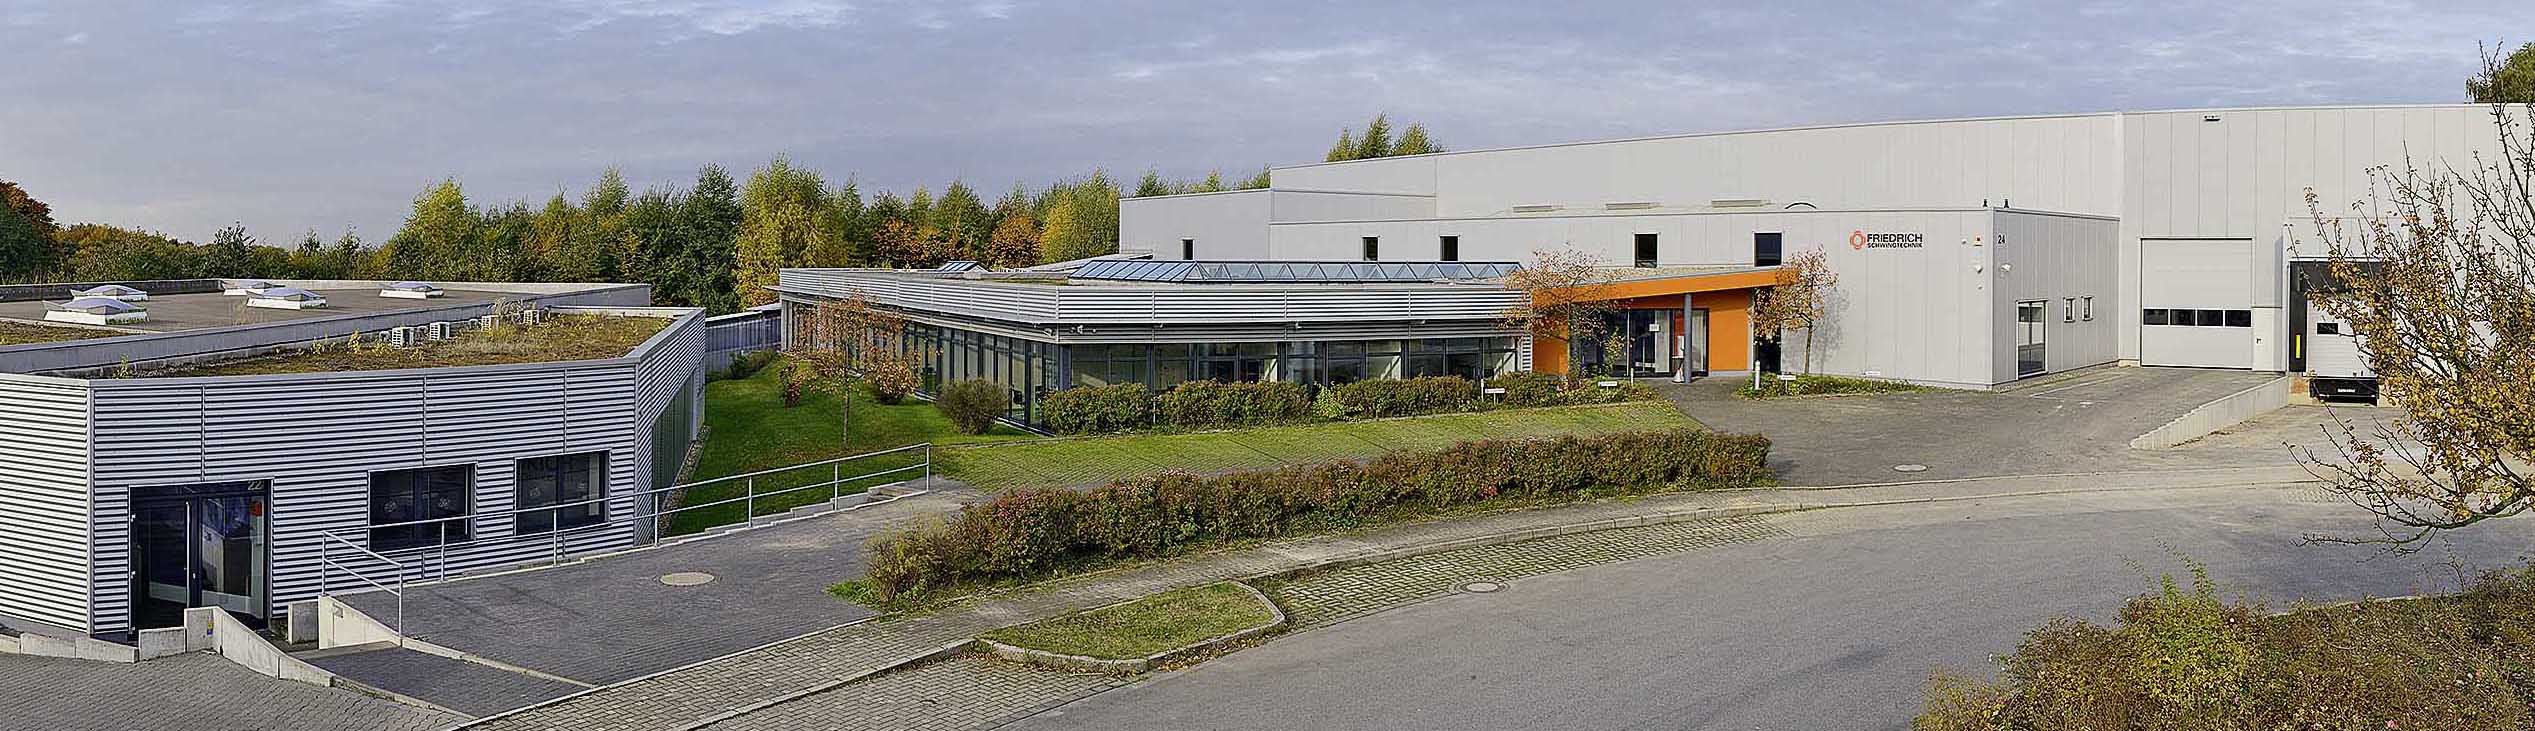 Friedrich Schwingtechnik GmbH, company buildings in Haan, Germany